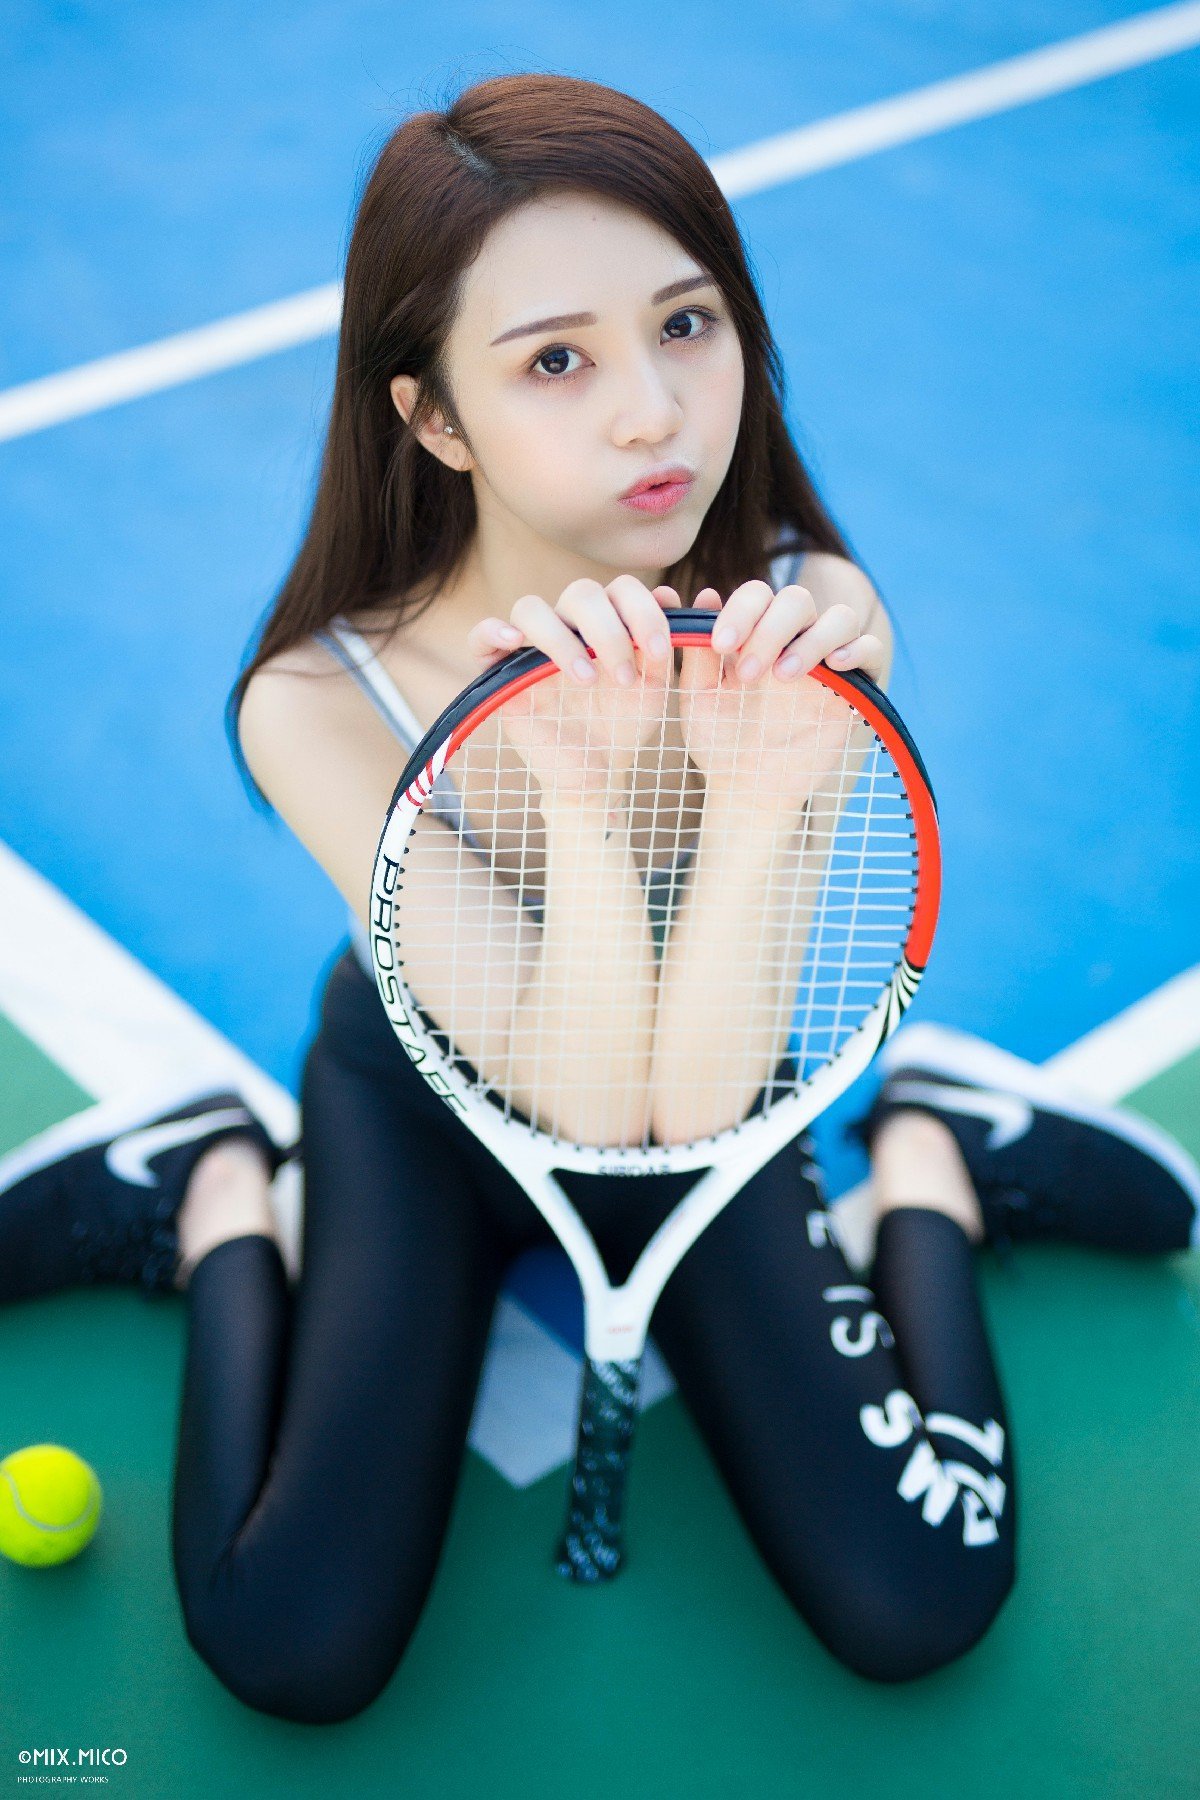 004-tennis-girl (11).jpg